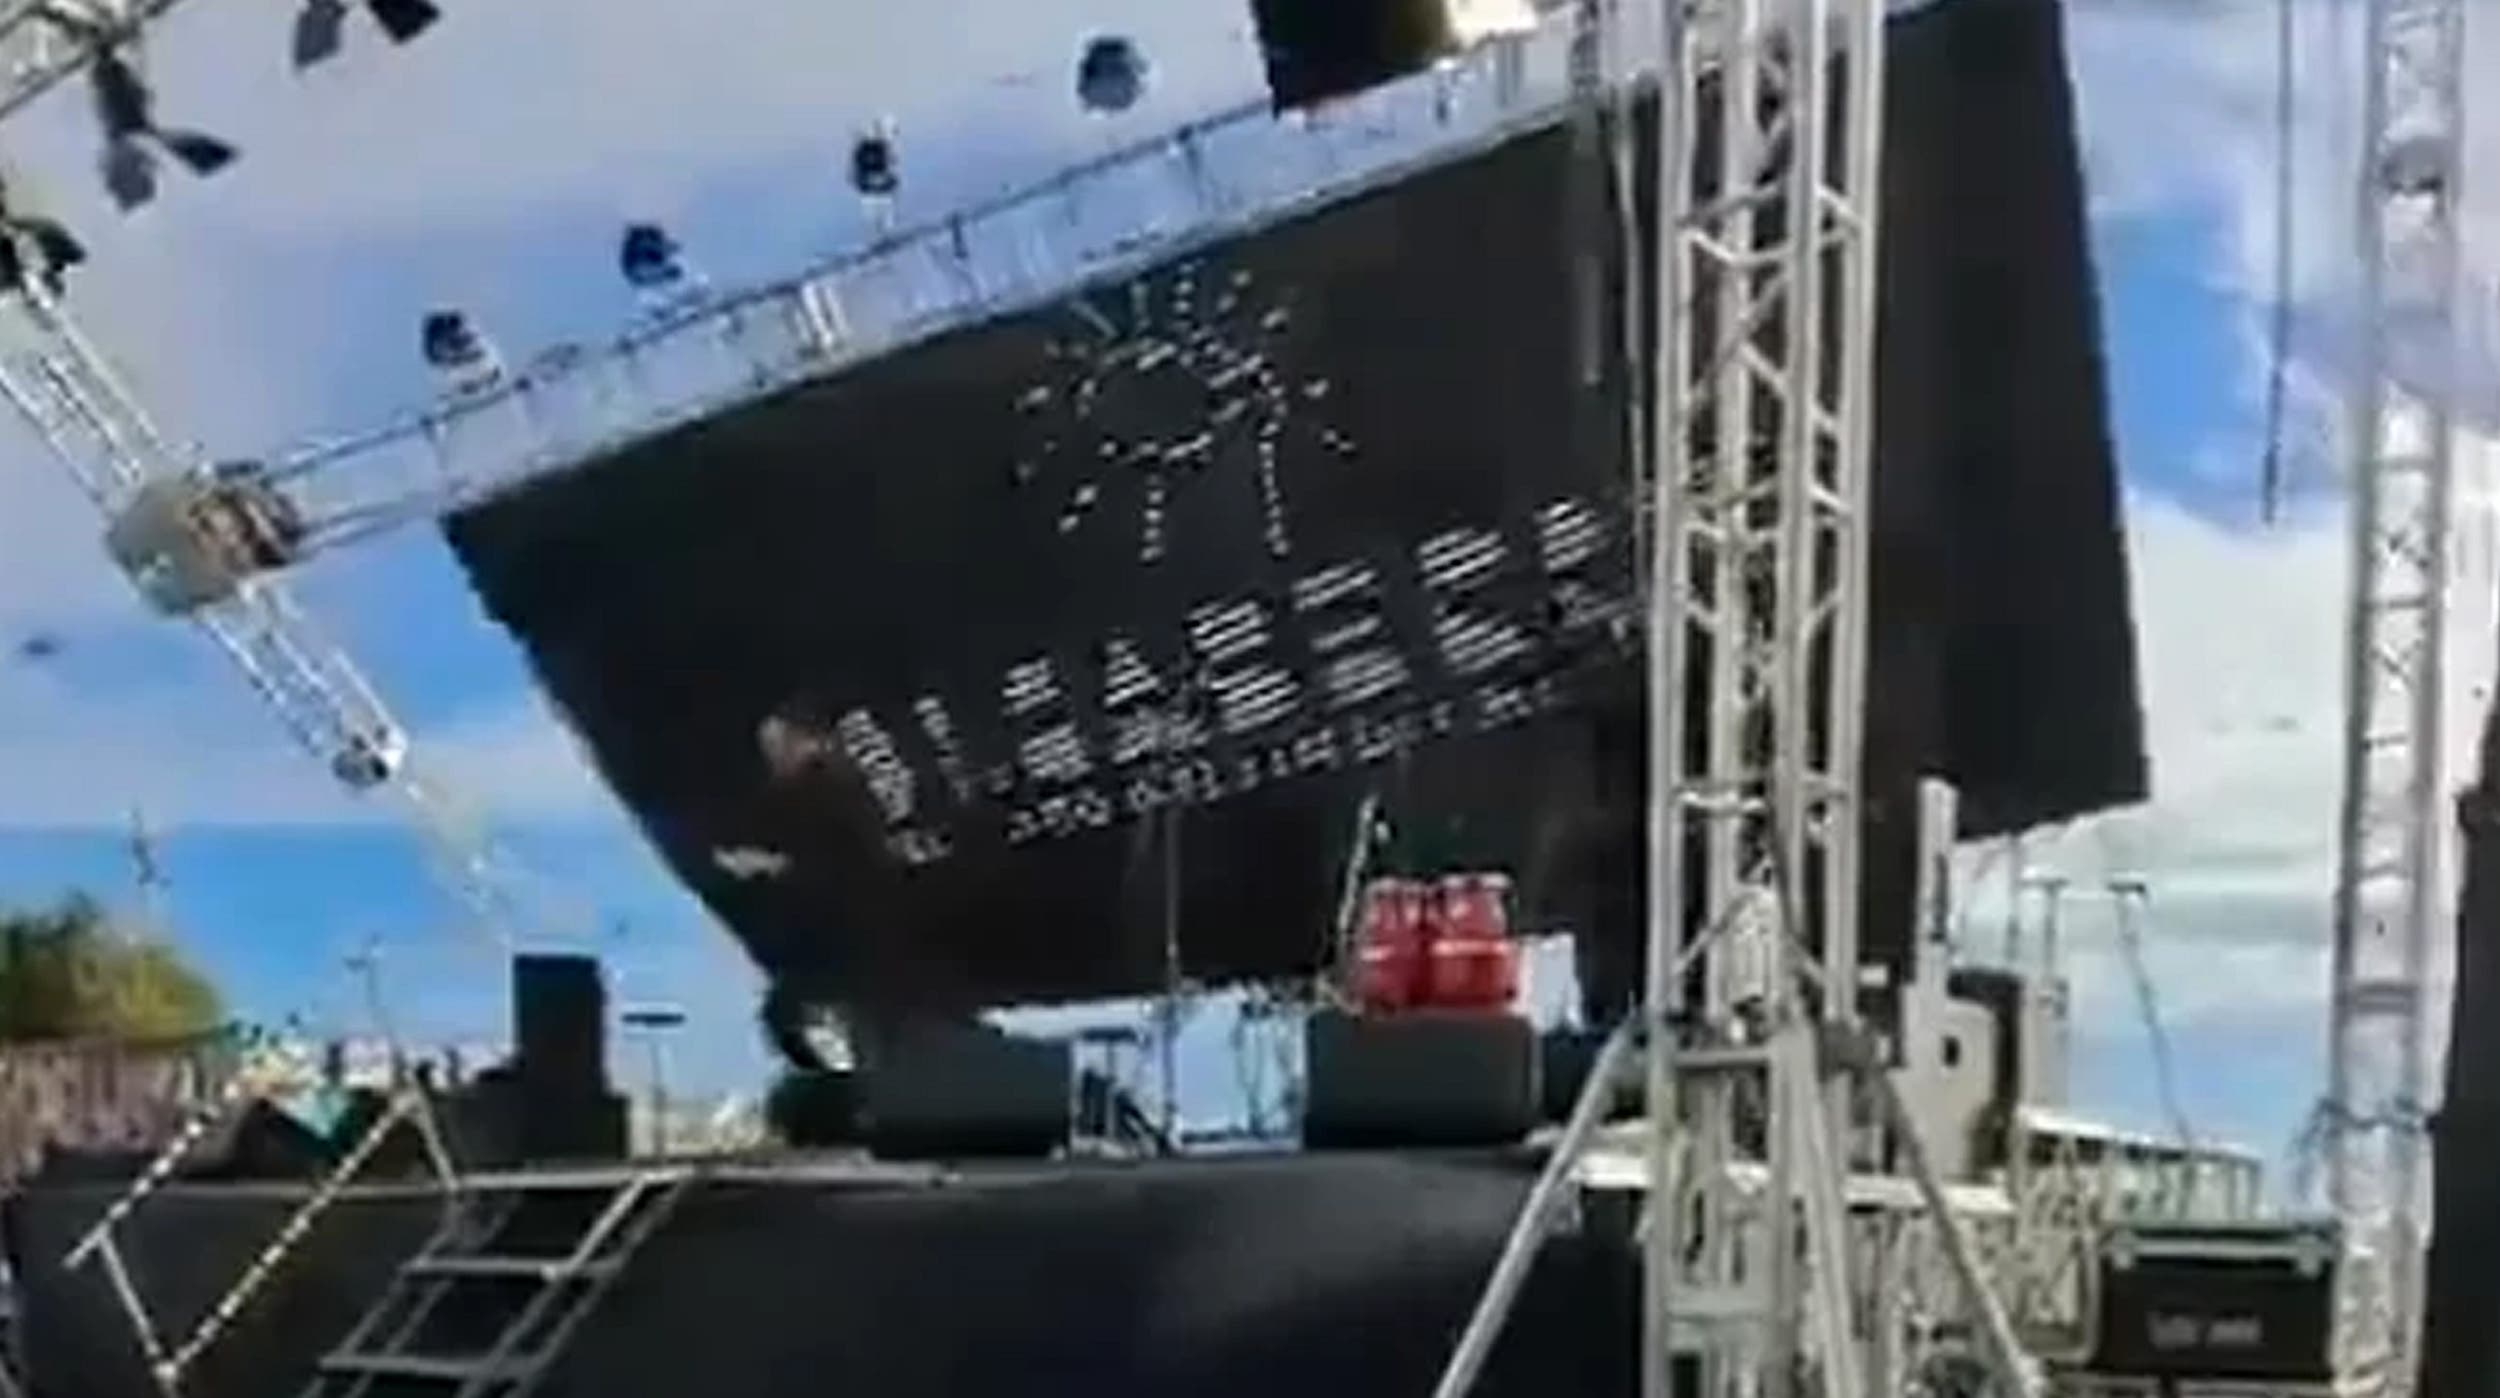 Cae pantalla gigante sobre el escenario durante el show de magia en Chile